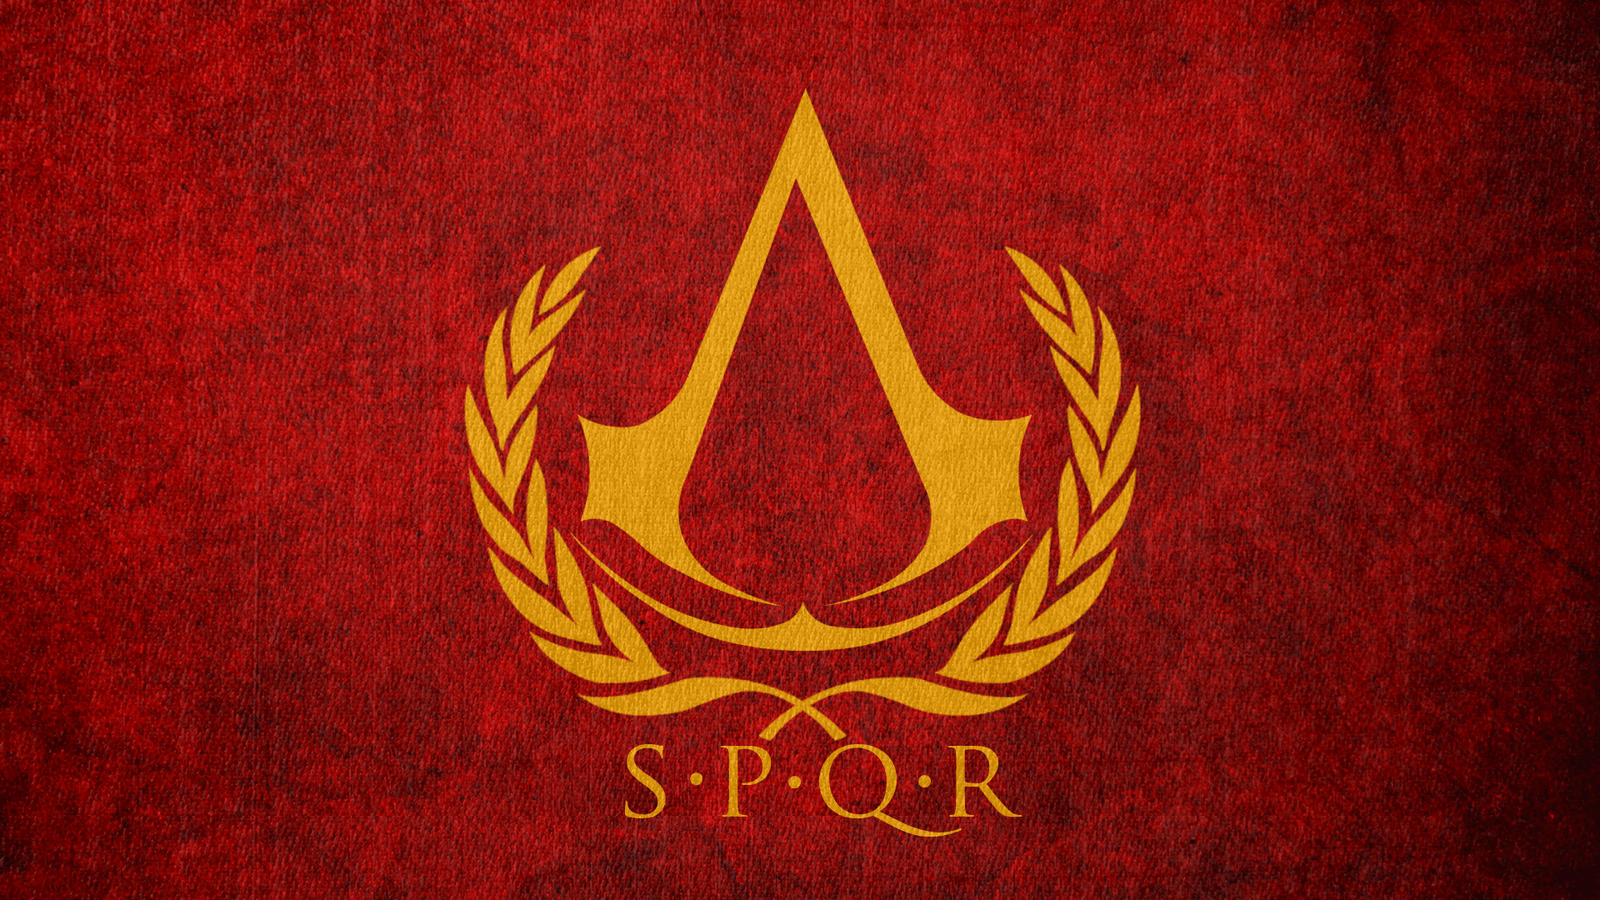 Флаг римской империи SPQR